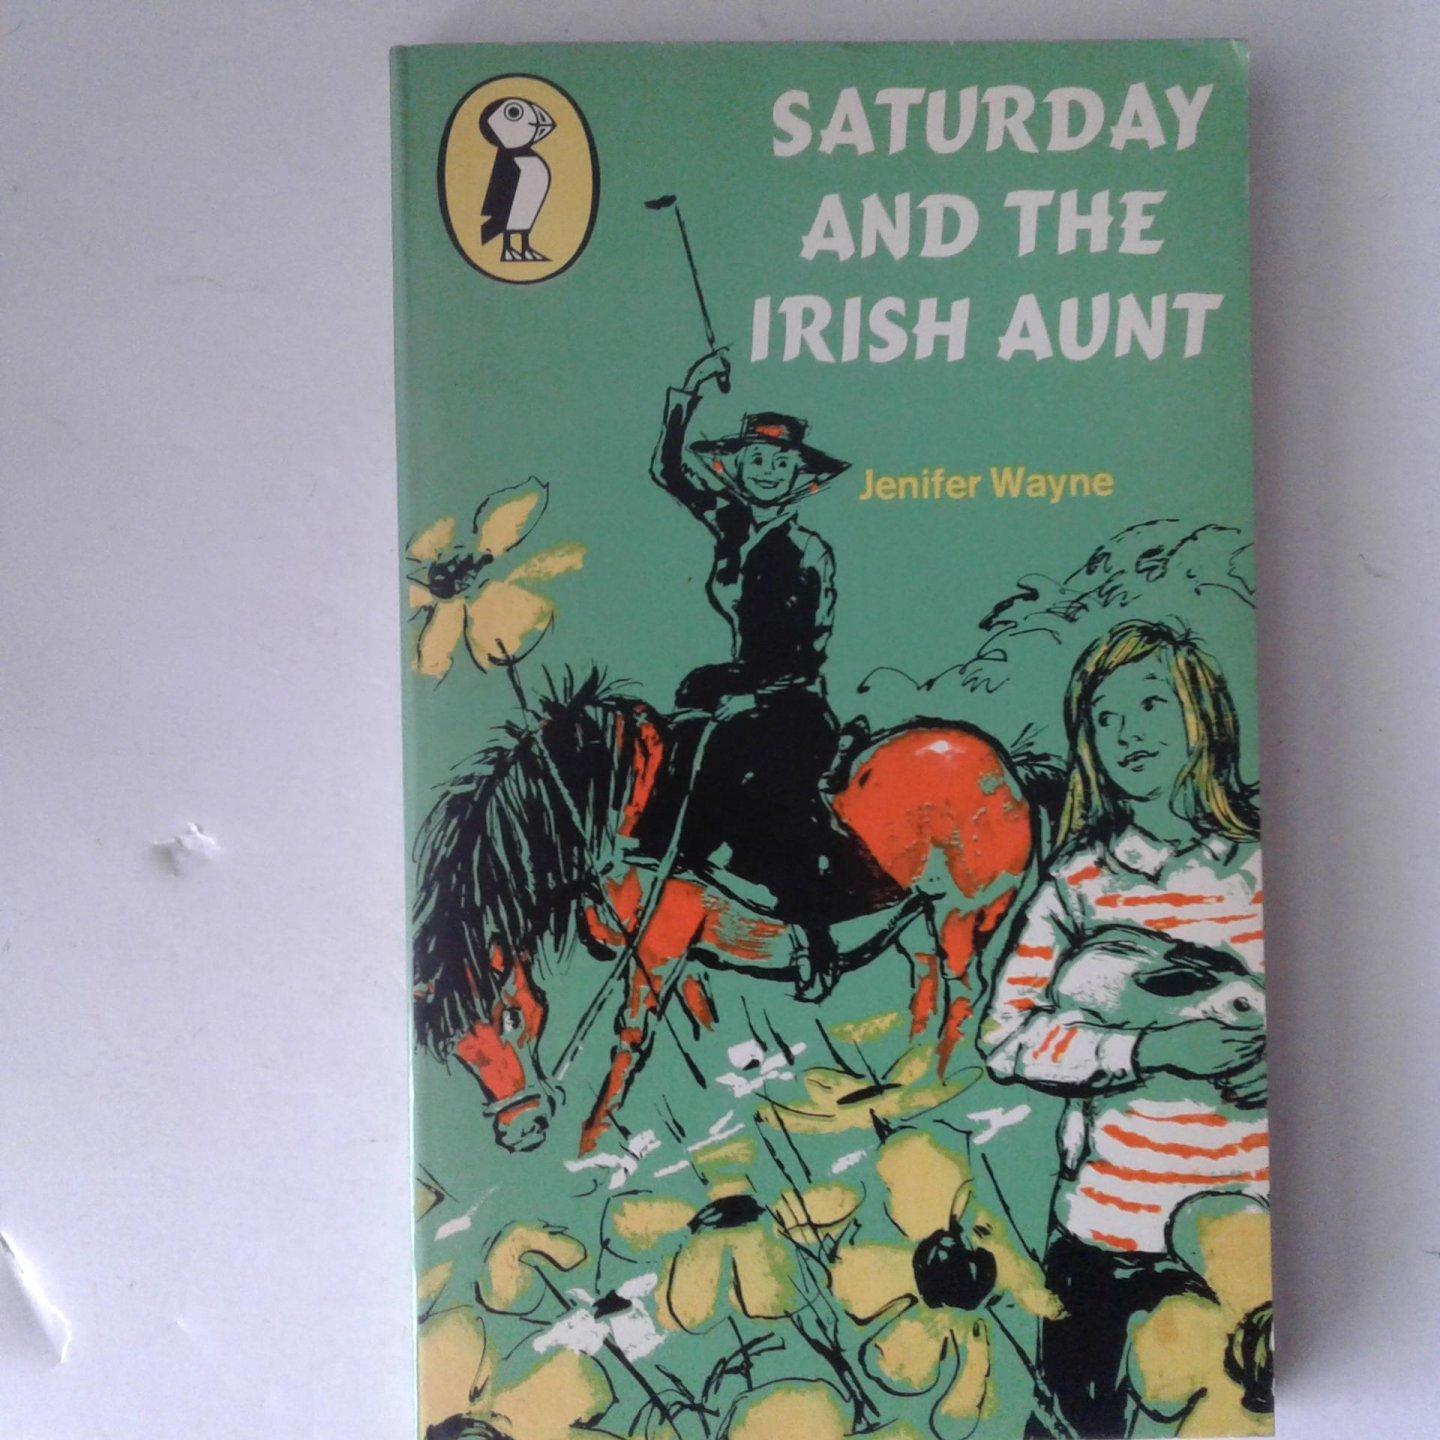 Waynr, Jenifer - Saturday and the Irish Aunt